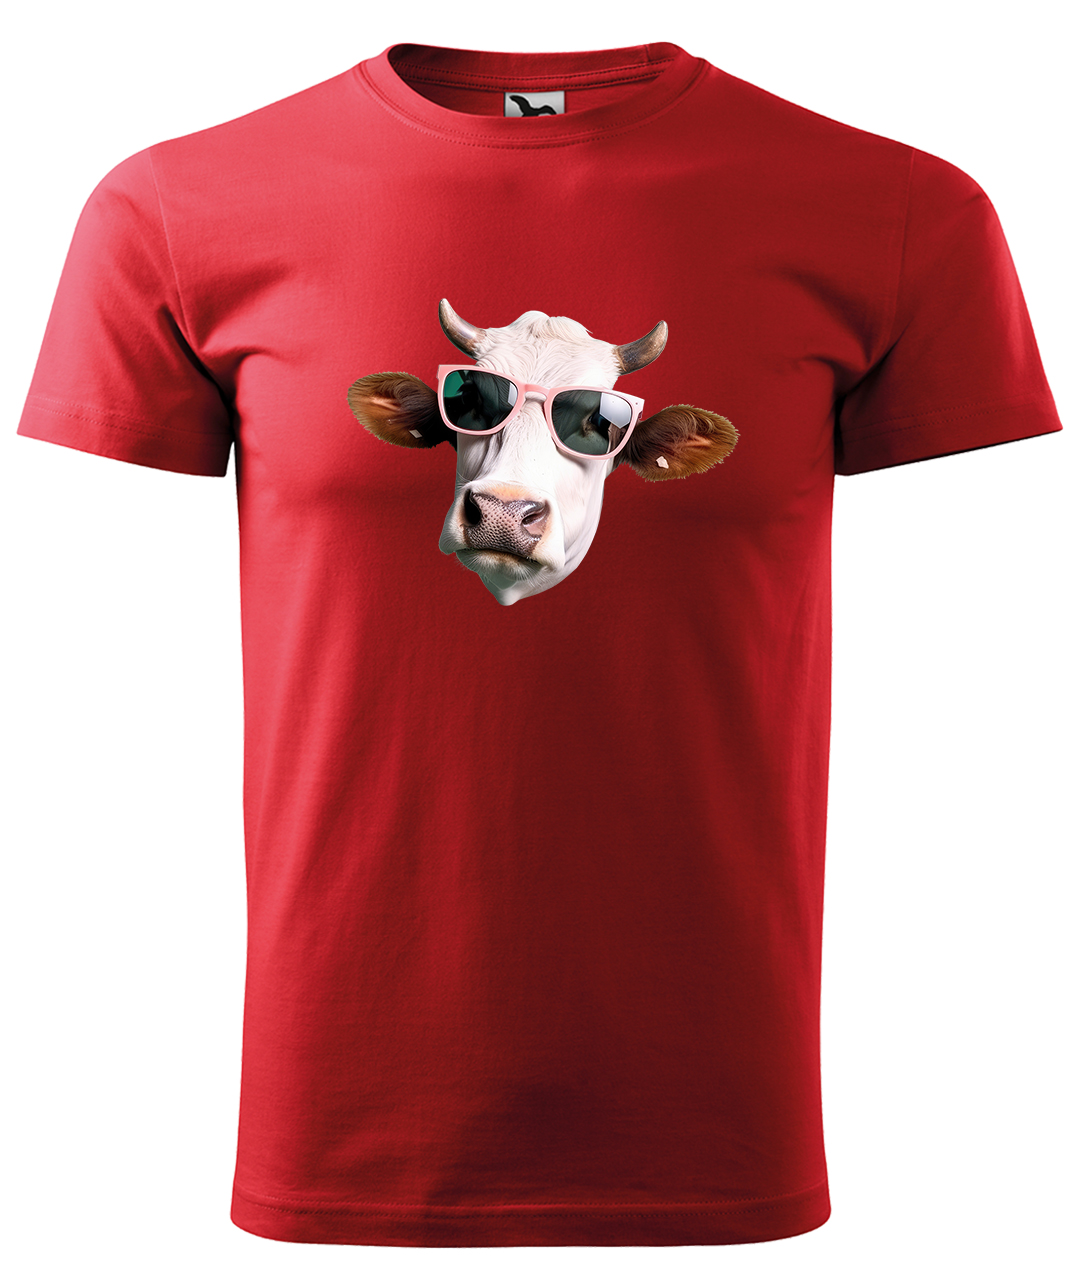 Dětské tričko s krávou - Kráva v brýlích Velikost: 8 let / 134 cm, Barva: Červená (07), Délka rukávu: Krátký rukáv